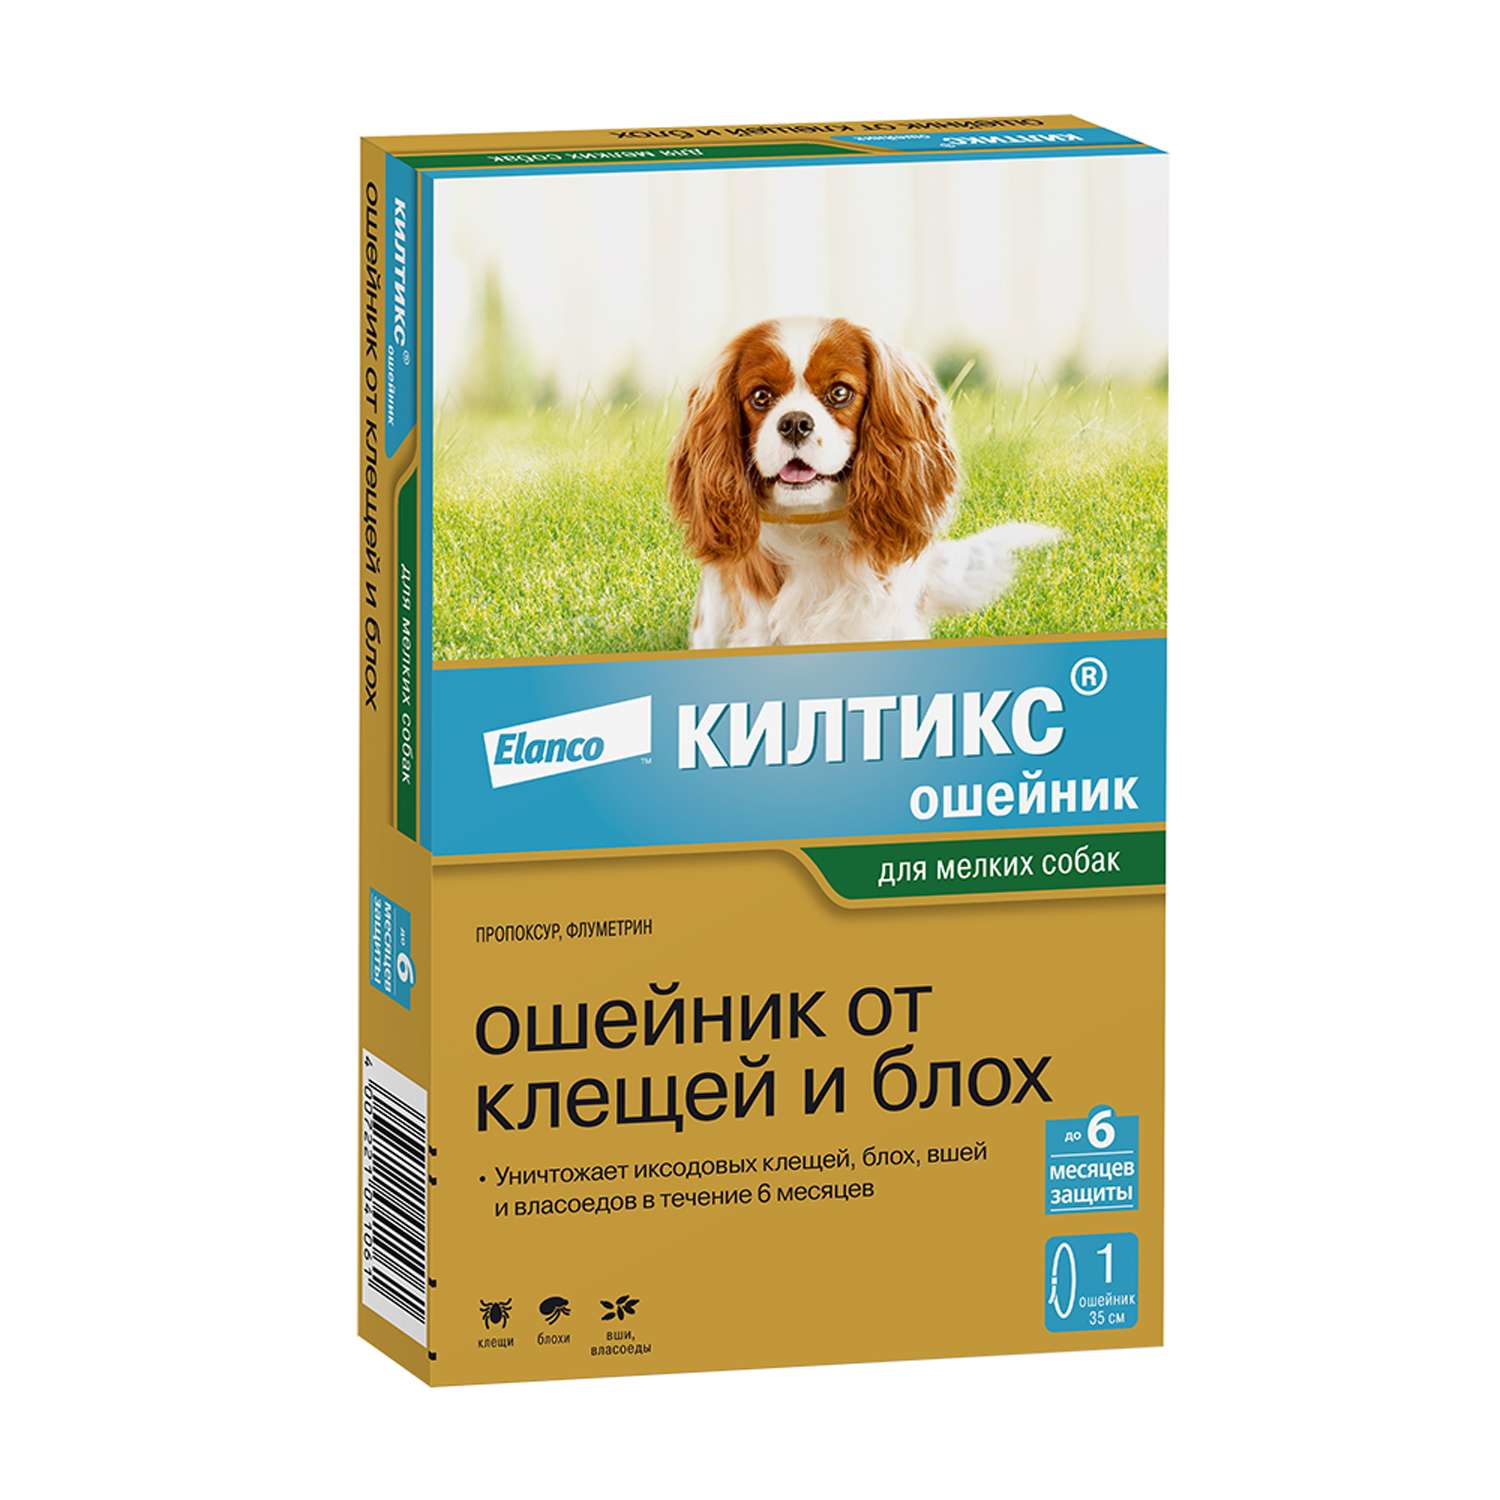 Ошейник для собак Elanco Килтикс против блох и клещей 35см - фото 1